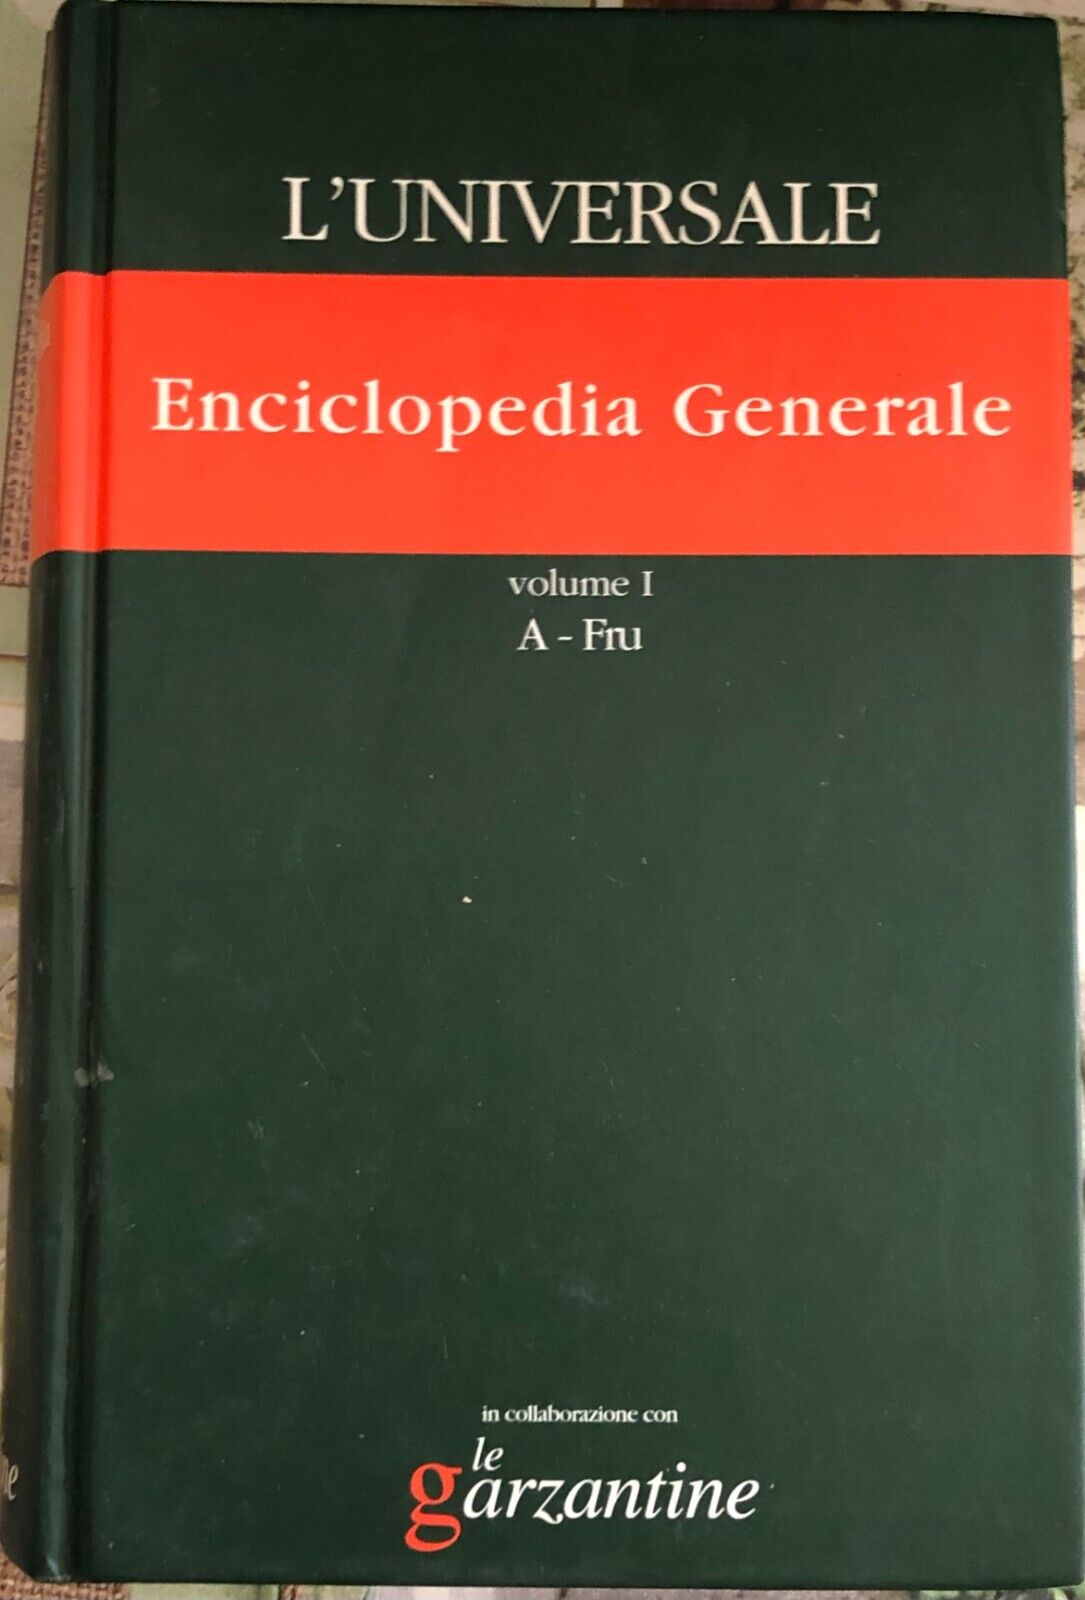 L'Universale Enciclopedia Generale Vol. I A-Fru di Il Giornale,  2003,  Garzanti